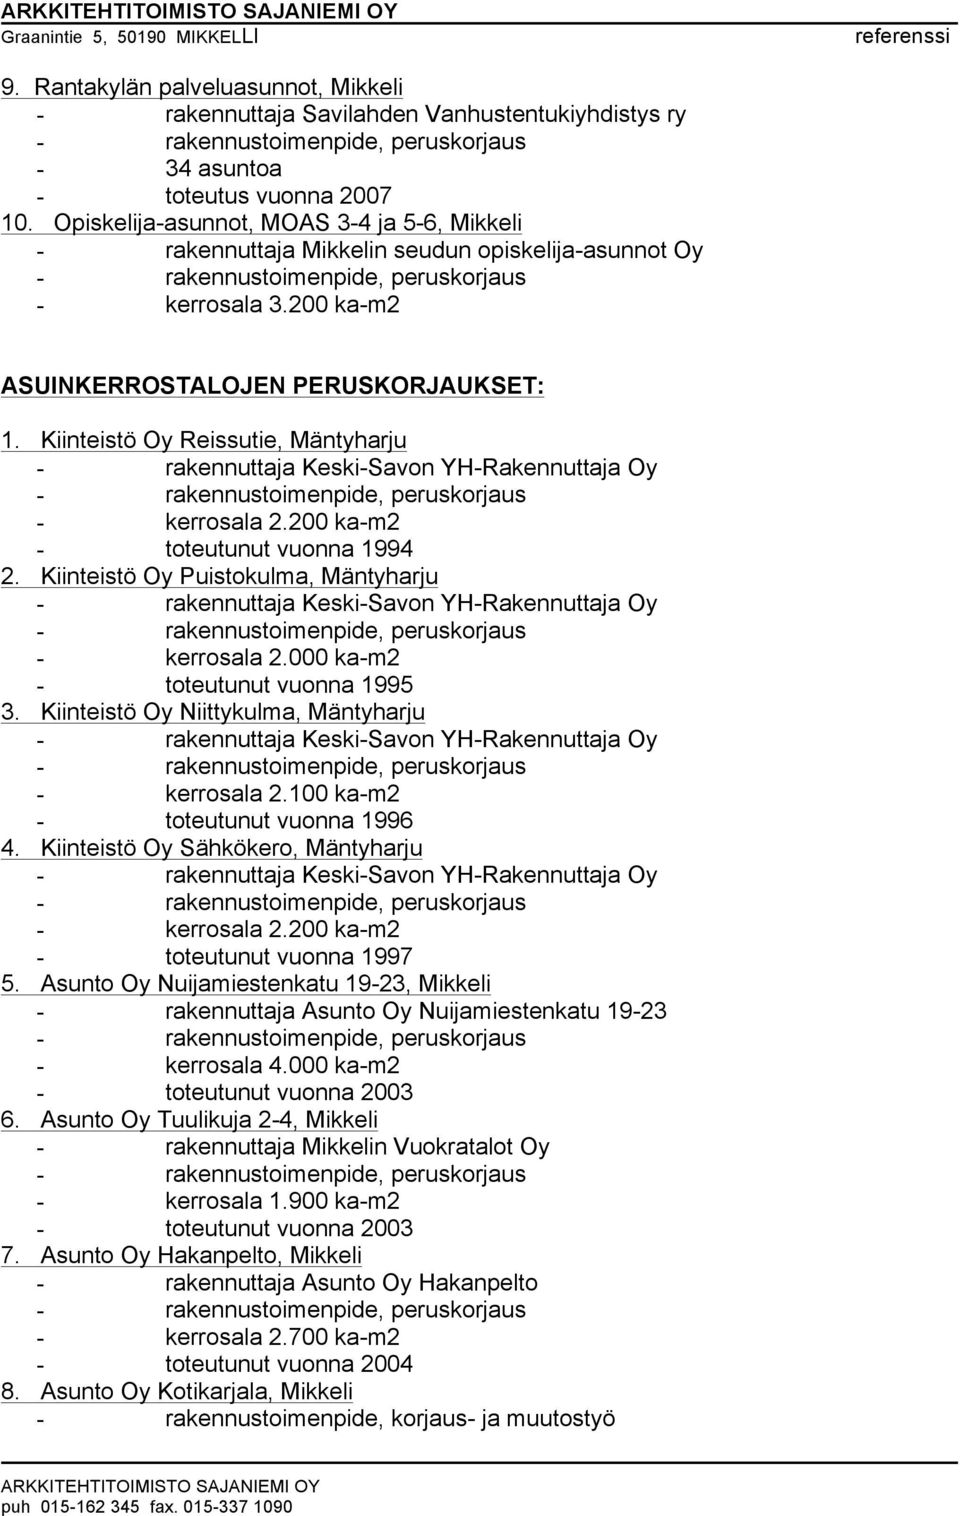 Kiinteistö Oy Reissutie, Mäntyharju - rakennuttaja Keski-Savon YH-Rakennuttaja Oy - kerrosala 2.200 ka-m2 - toteutunut vuonna 1994 2.